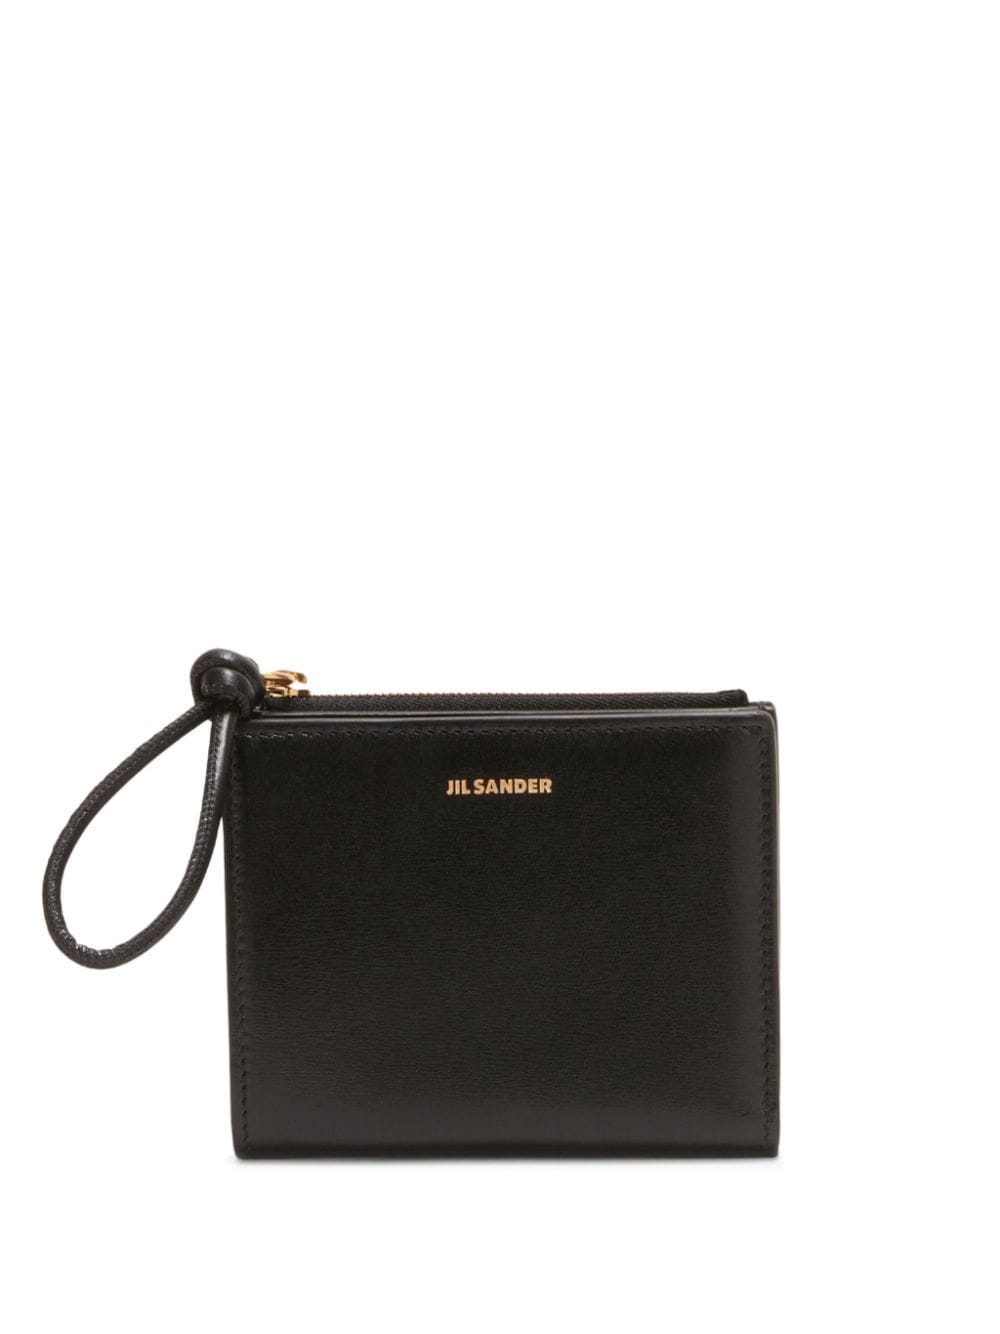 Jil Sander small bi-fold leather purse - Black von Jil Sander